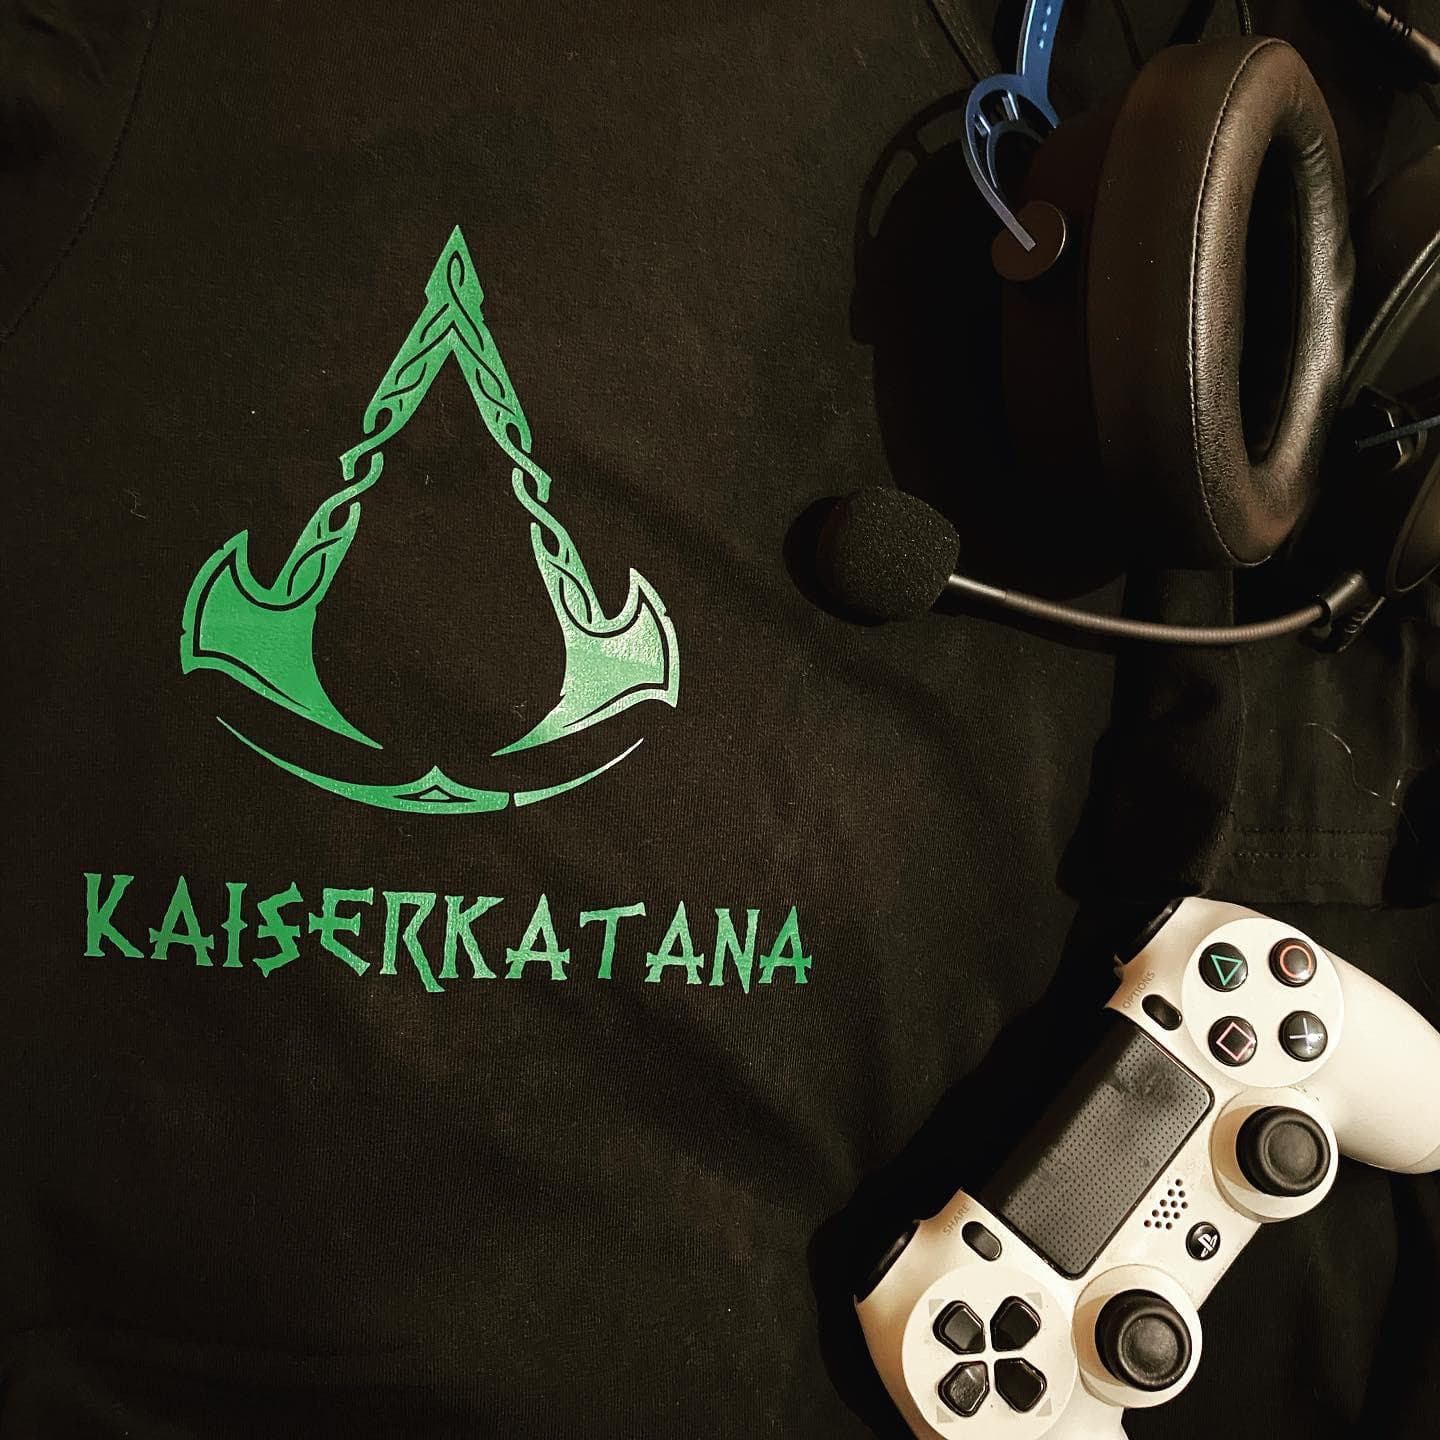 Gamer Shirt "KaiserKatana"